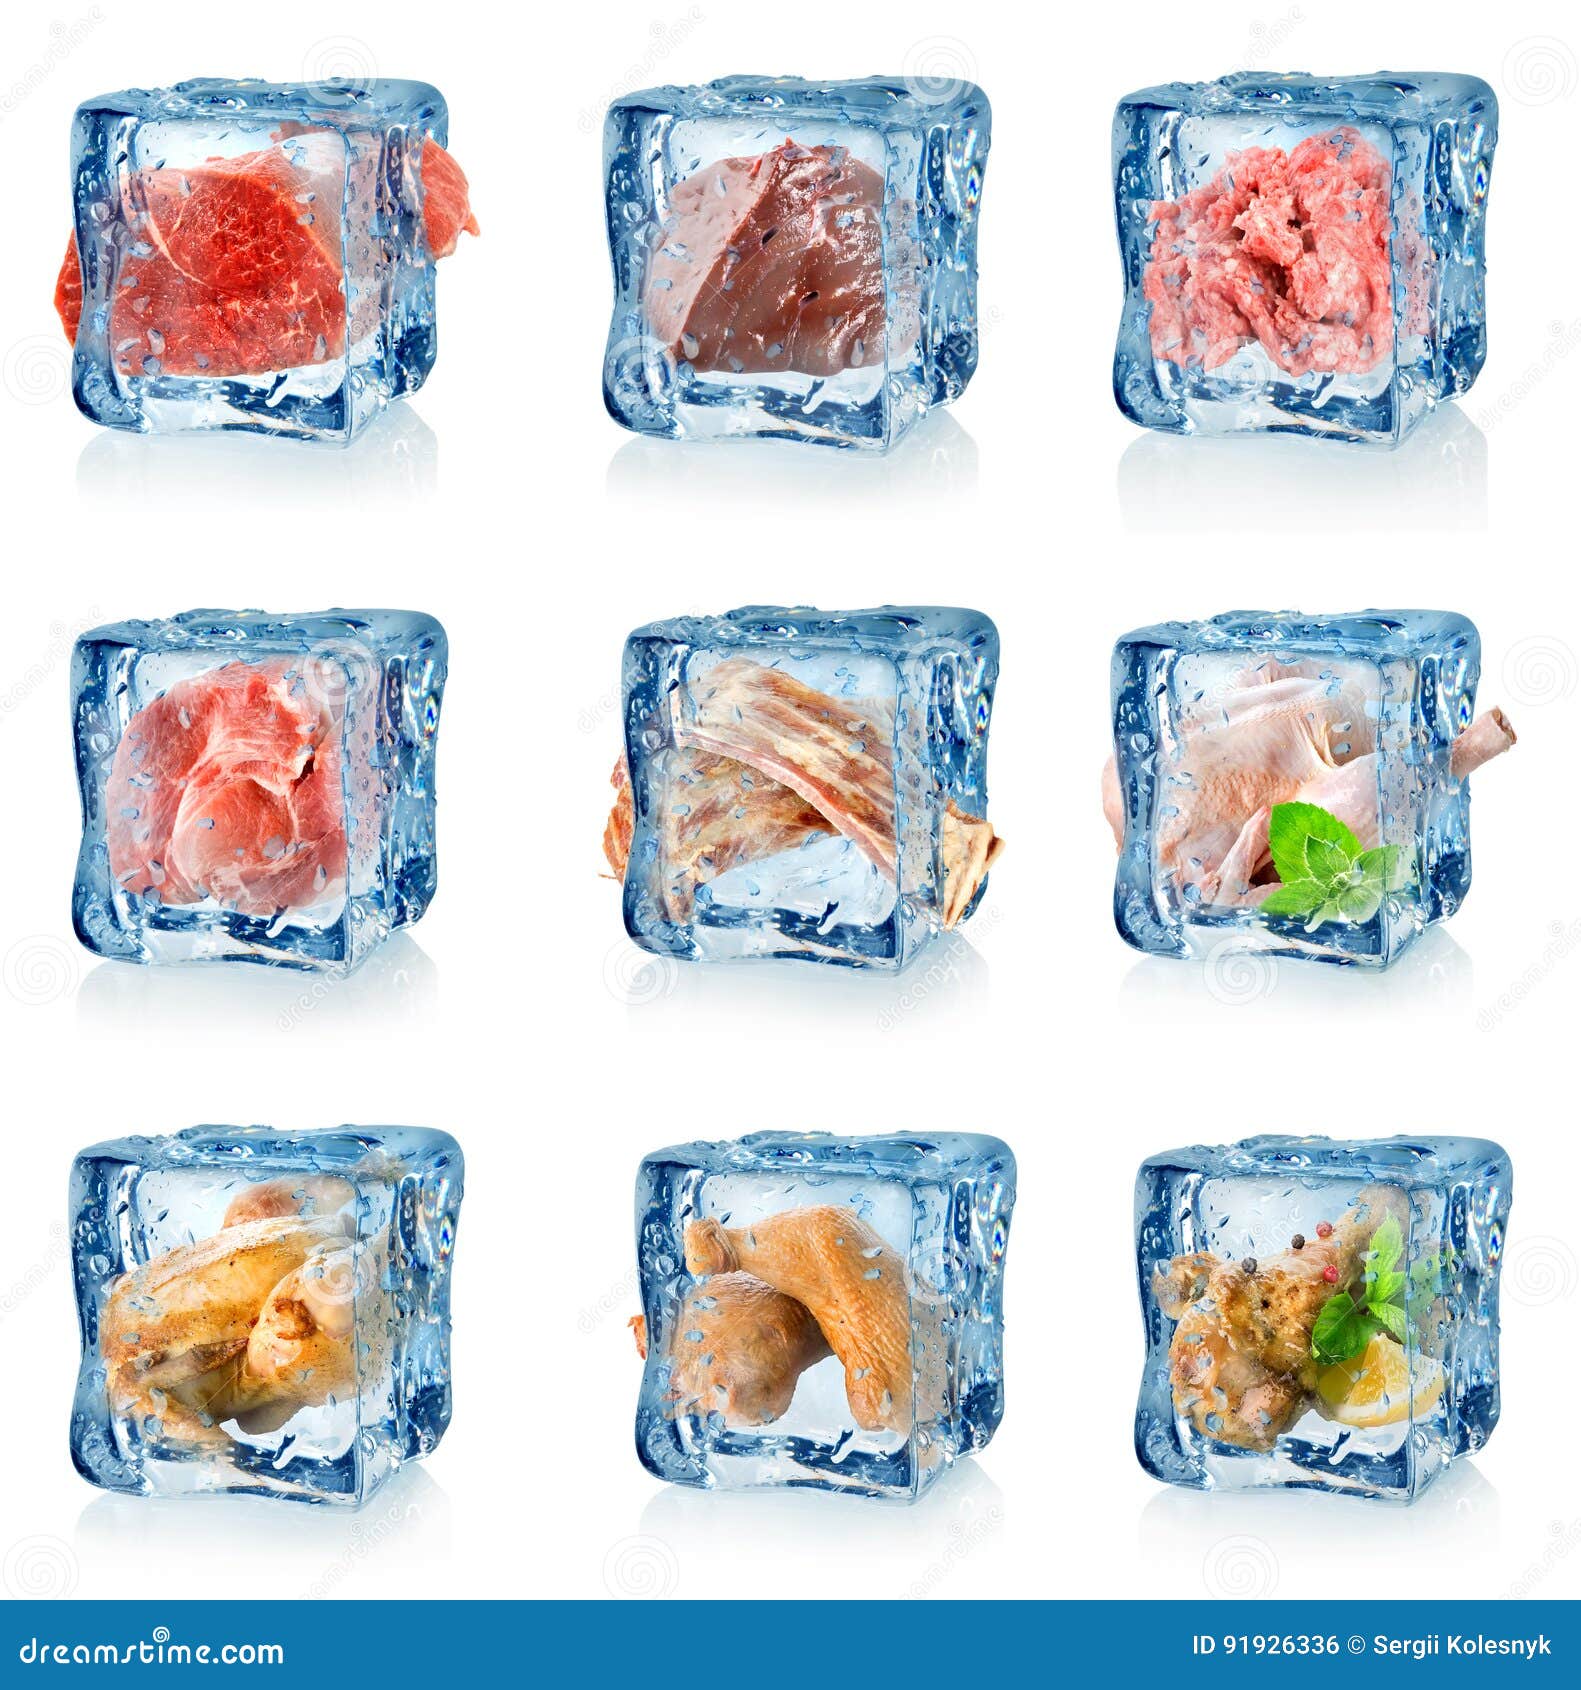 Заморозка про. Продукты в кубике льда. Замороженные продукты. Овощи в кубике льда.